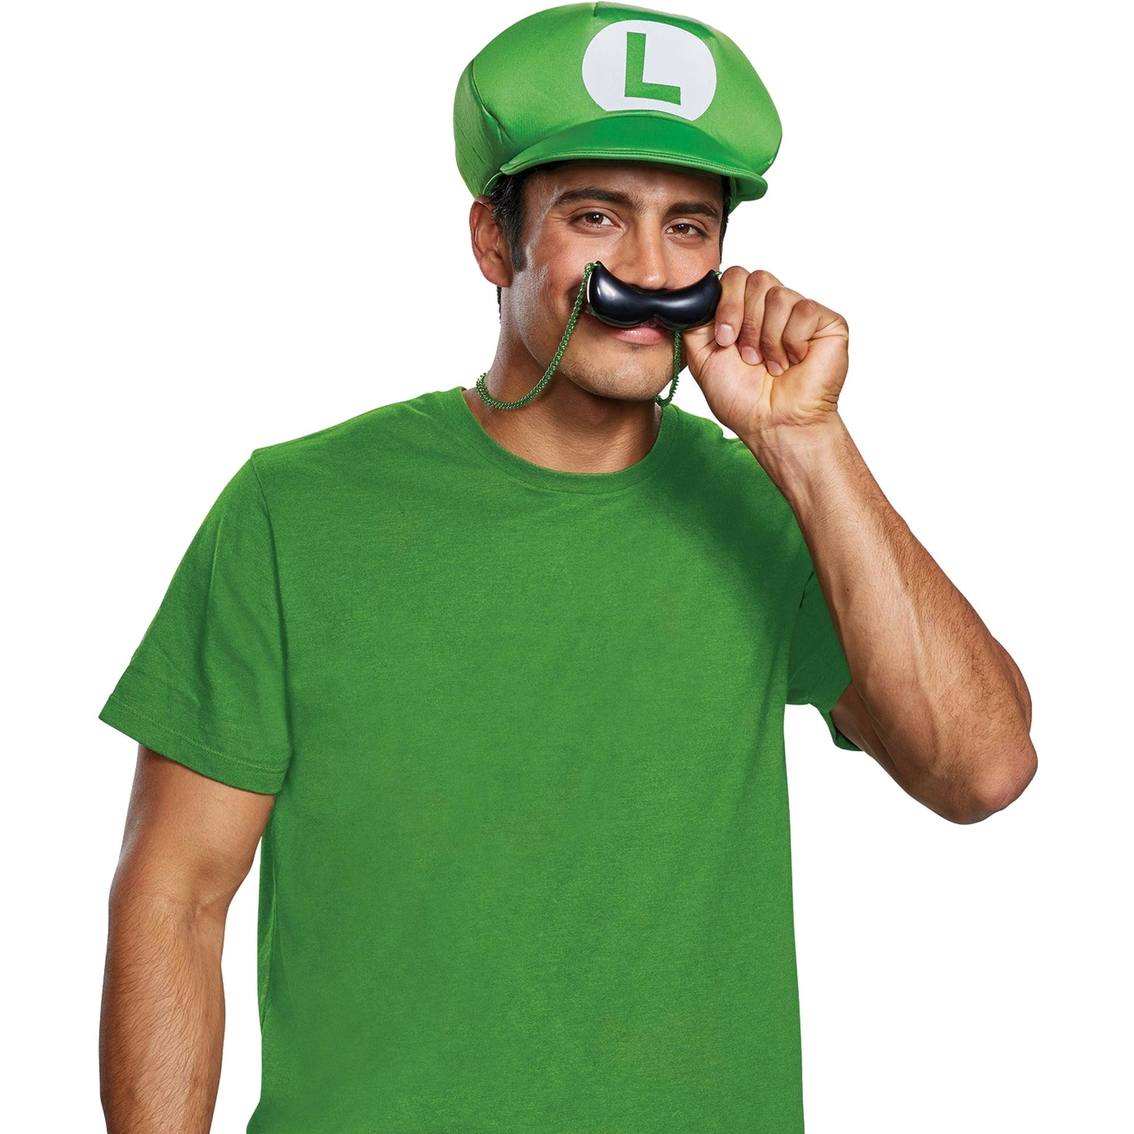 Disguise Ltd. Boys Super Mario Bros. Luigi Hat And ...